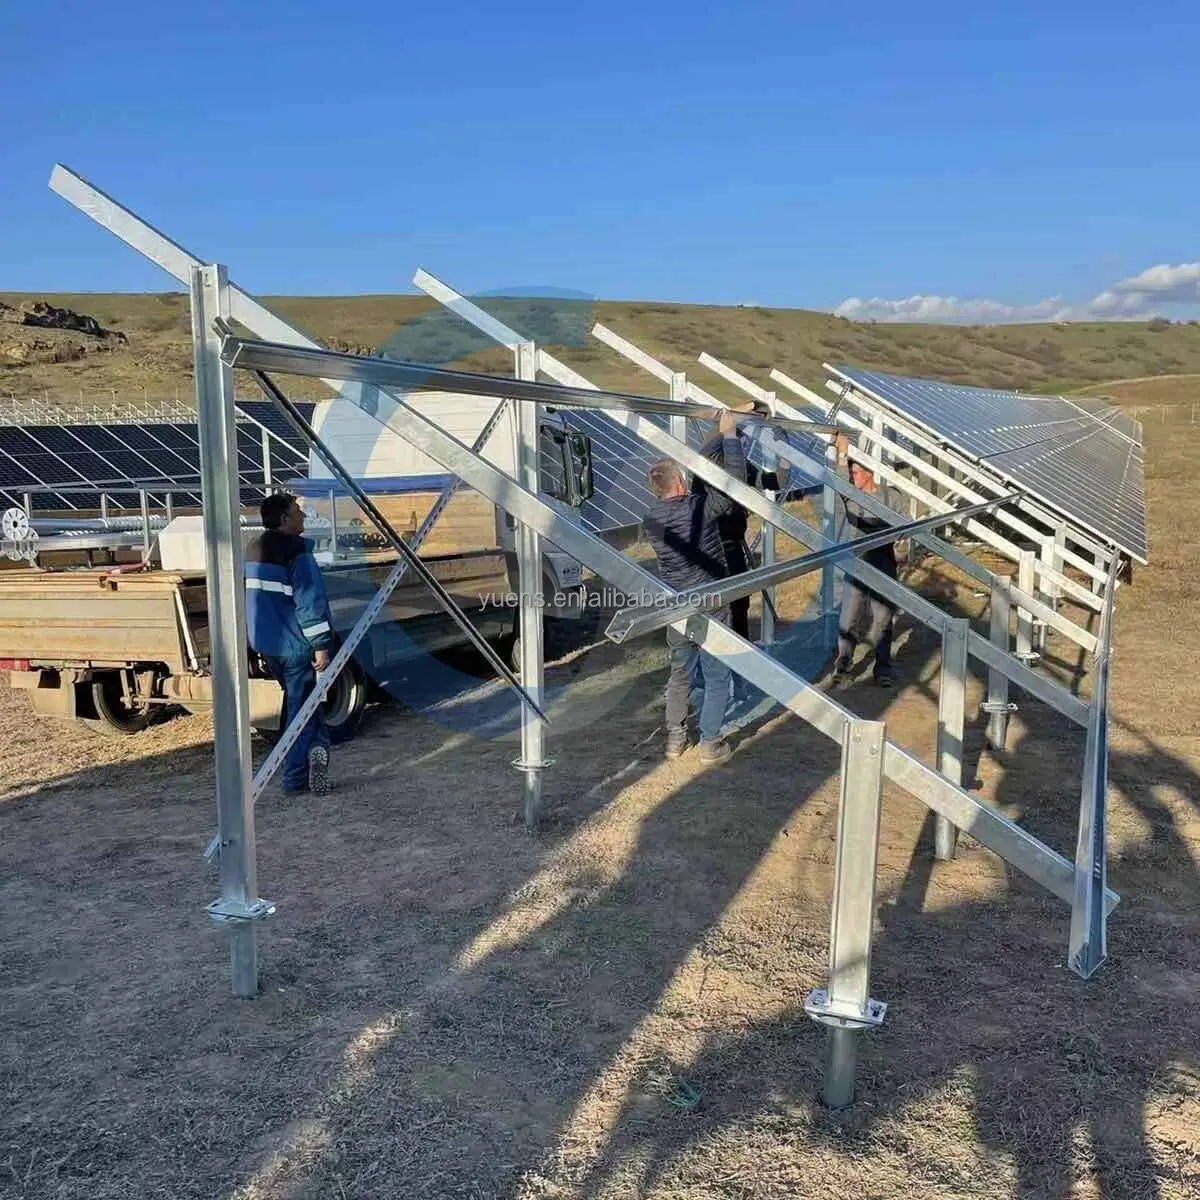 地上スタイルのソーラーパネル取り付けスタンドスタンドと呼ばれるスタンド亜鉛メッキ鋼アルミニウムソーラーパネル地上取り付けシステム